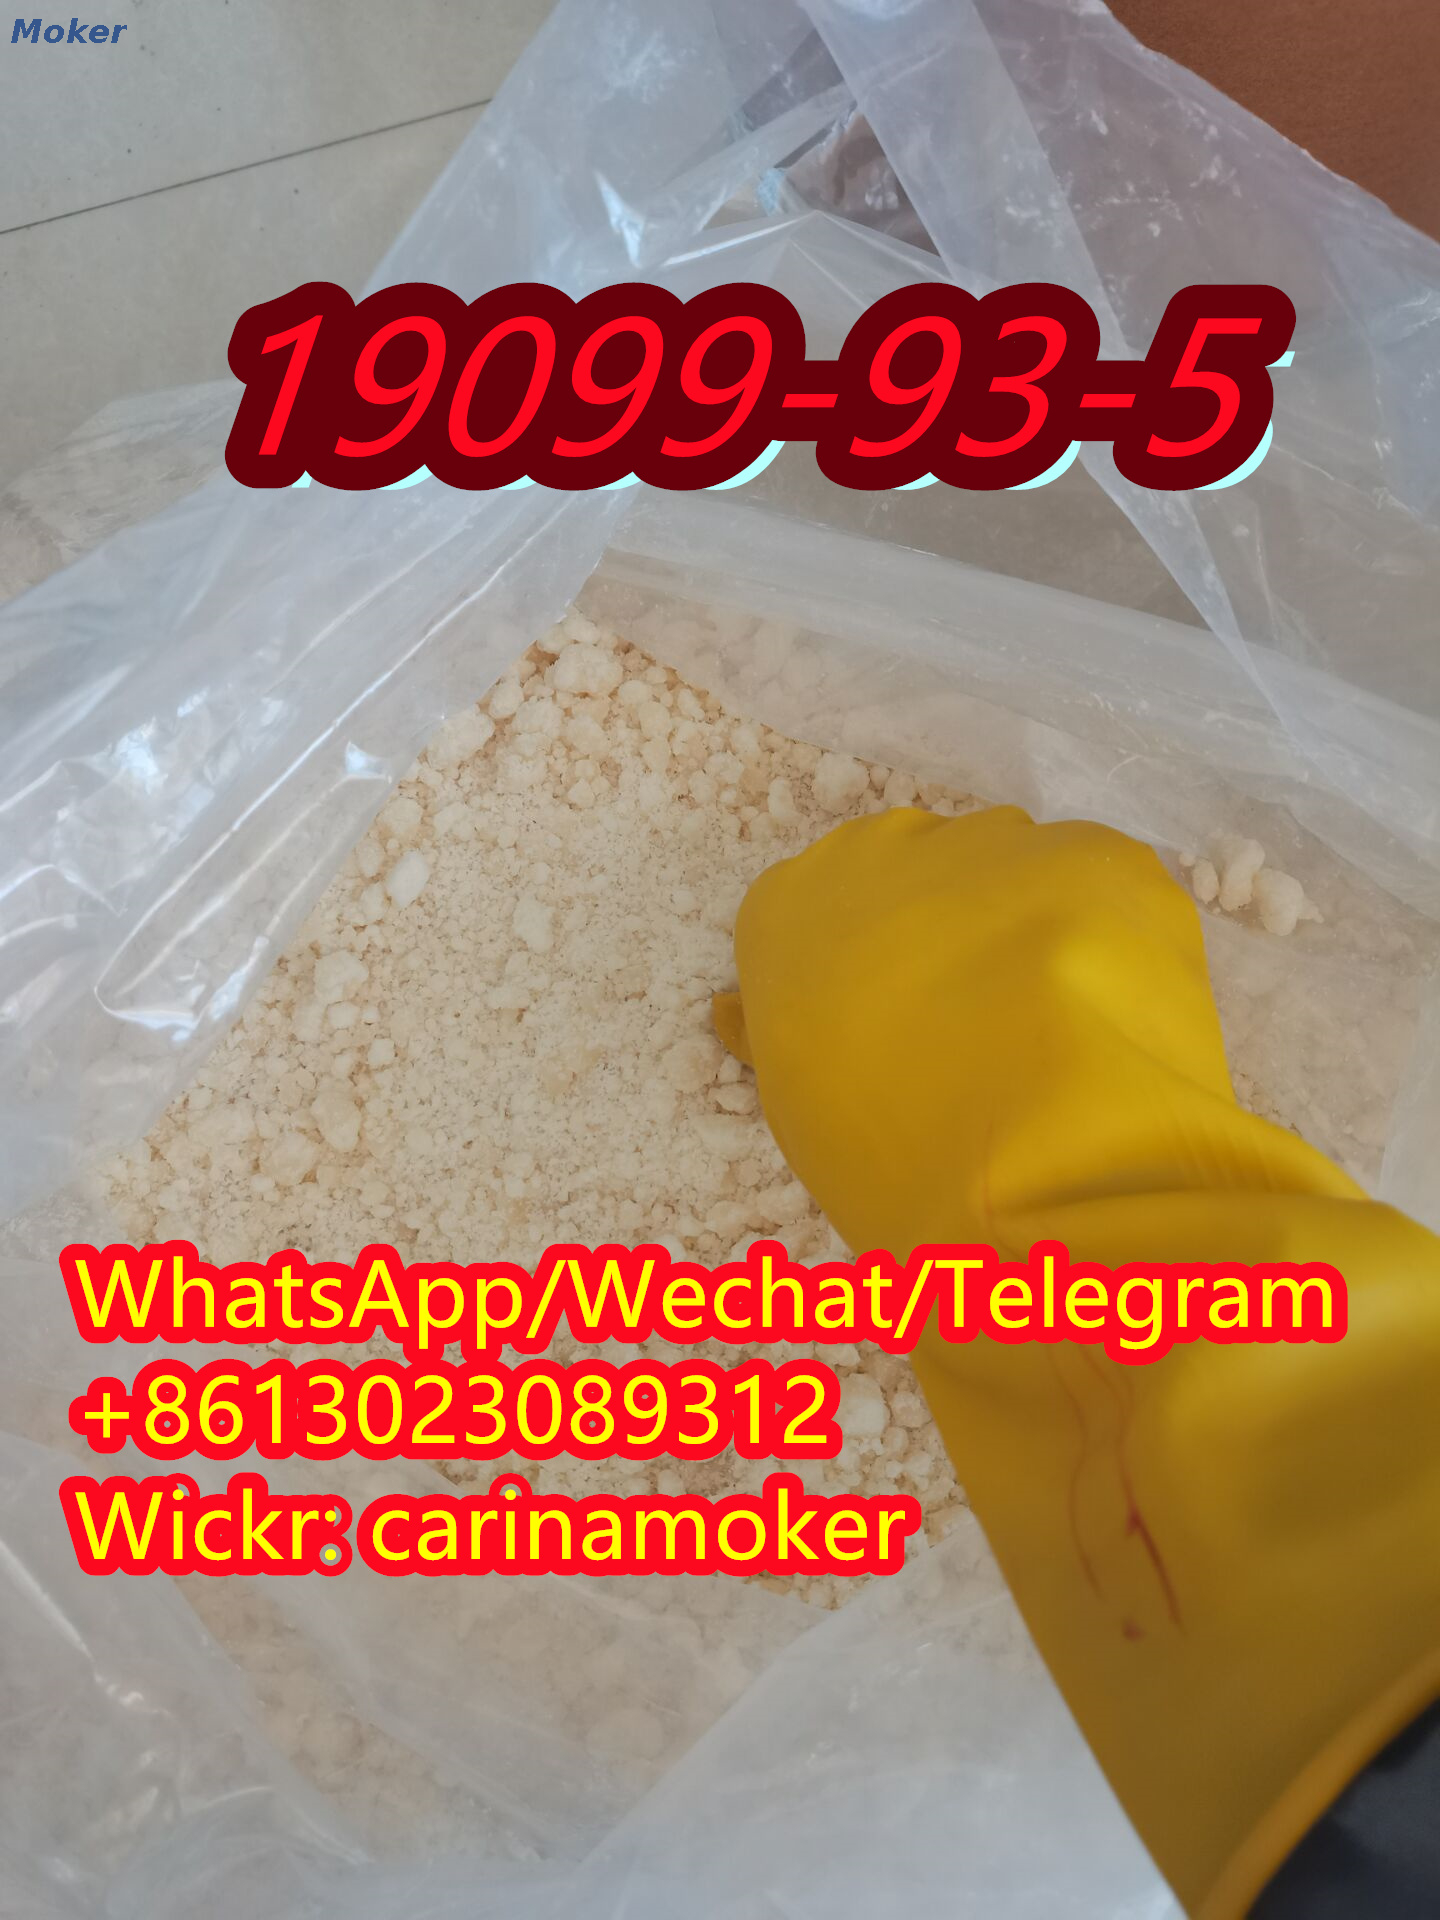 Hohe Qualität 1-(Benzyloxycarbonyl)-4-Piperidinon 19099-93-5 mit sicherer Lieferung